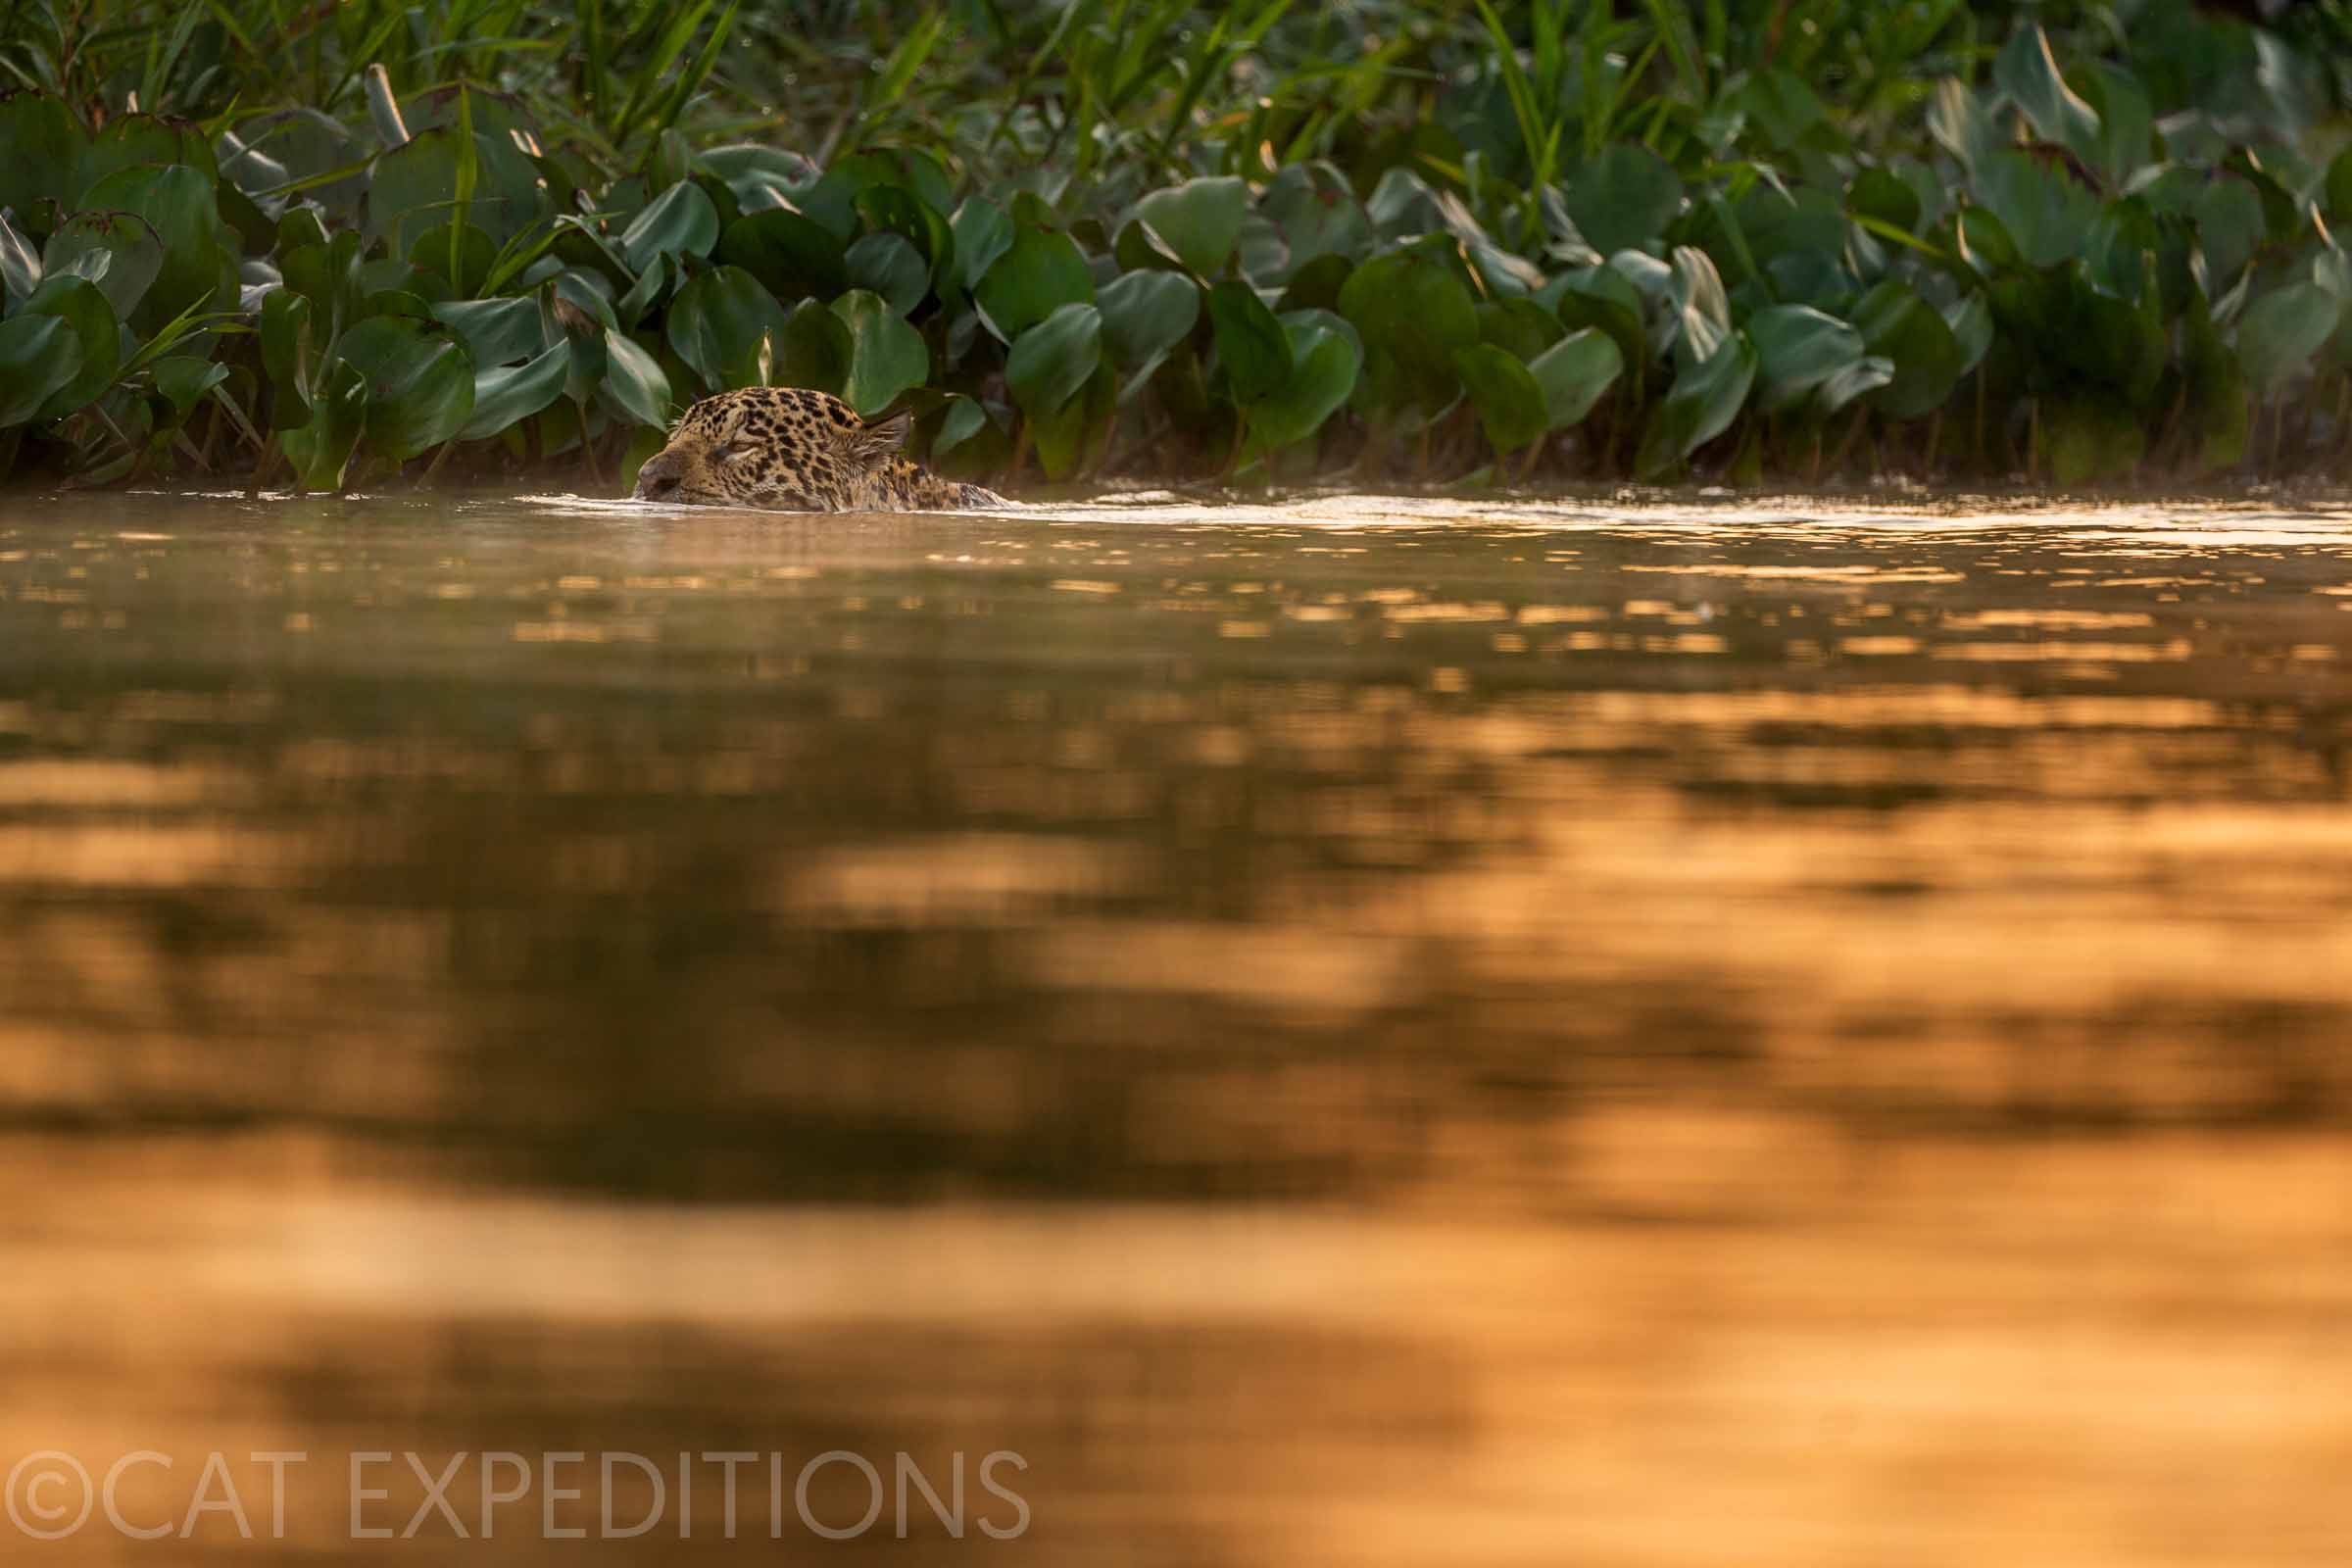 Jaguar swimming in the Pantanal of Brazil